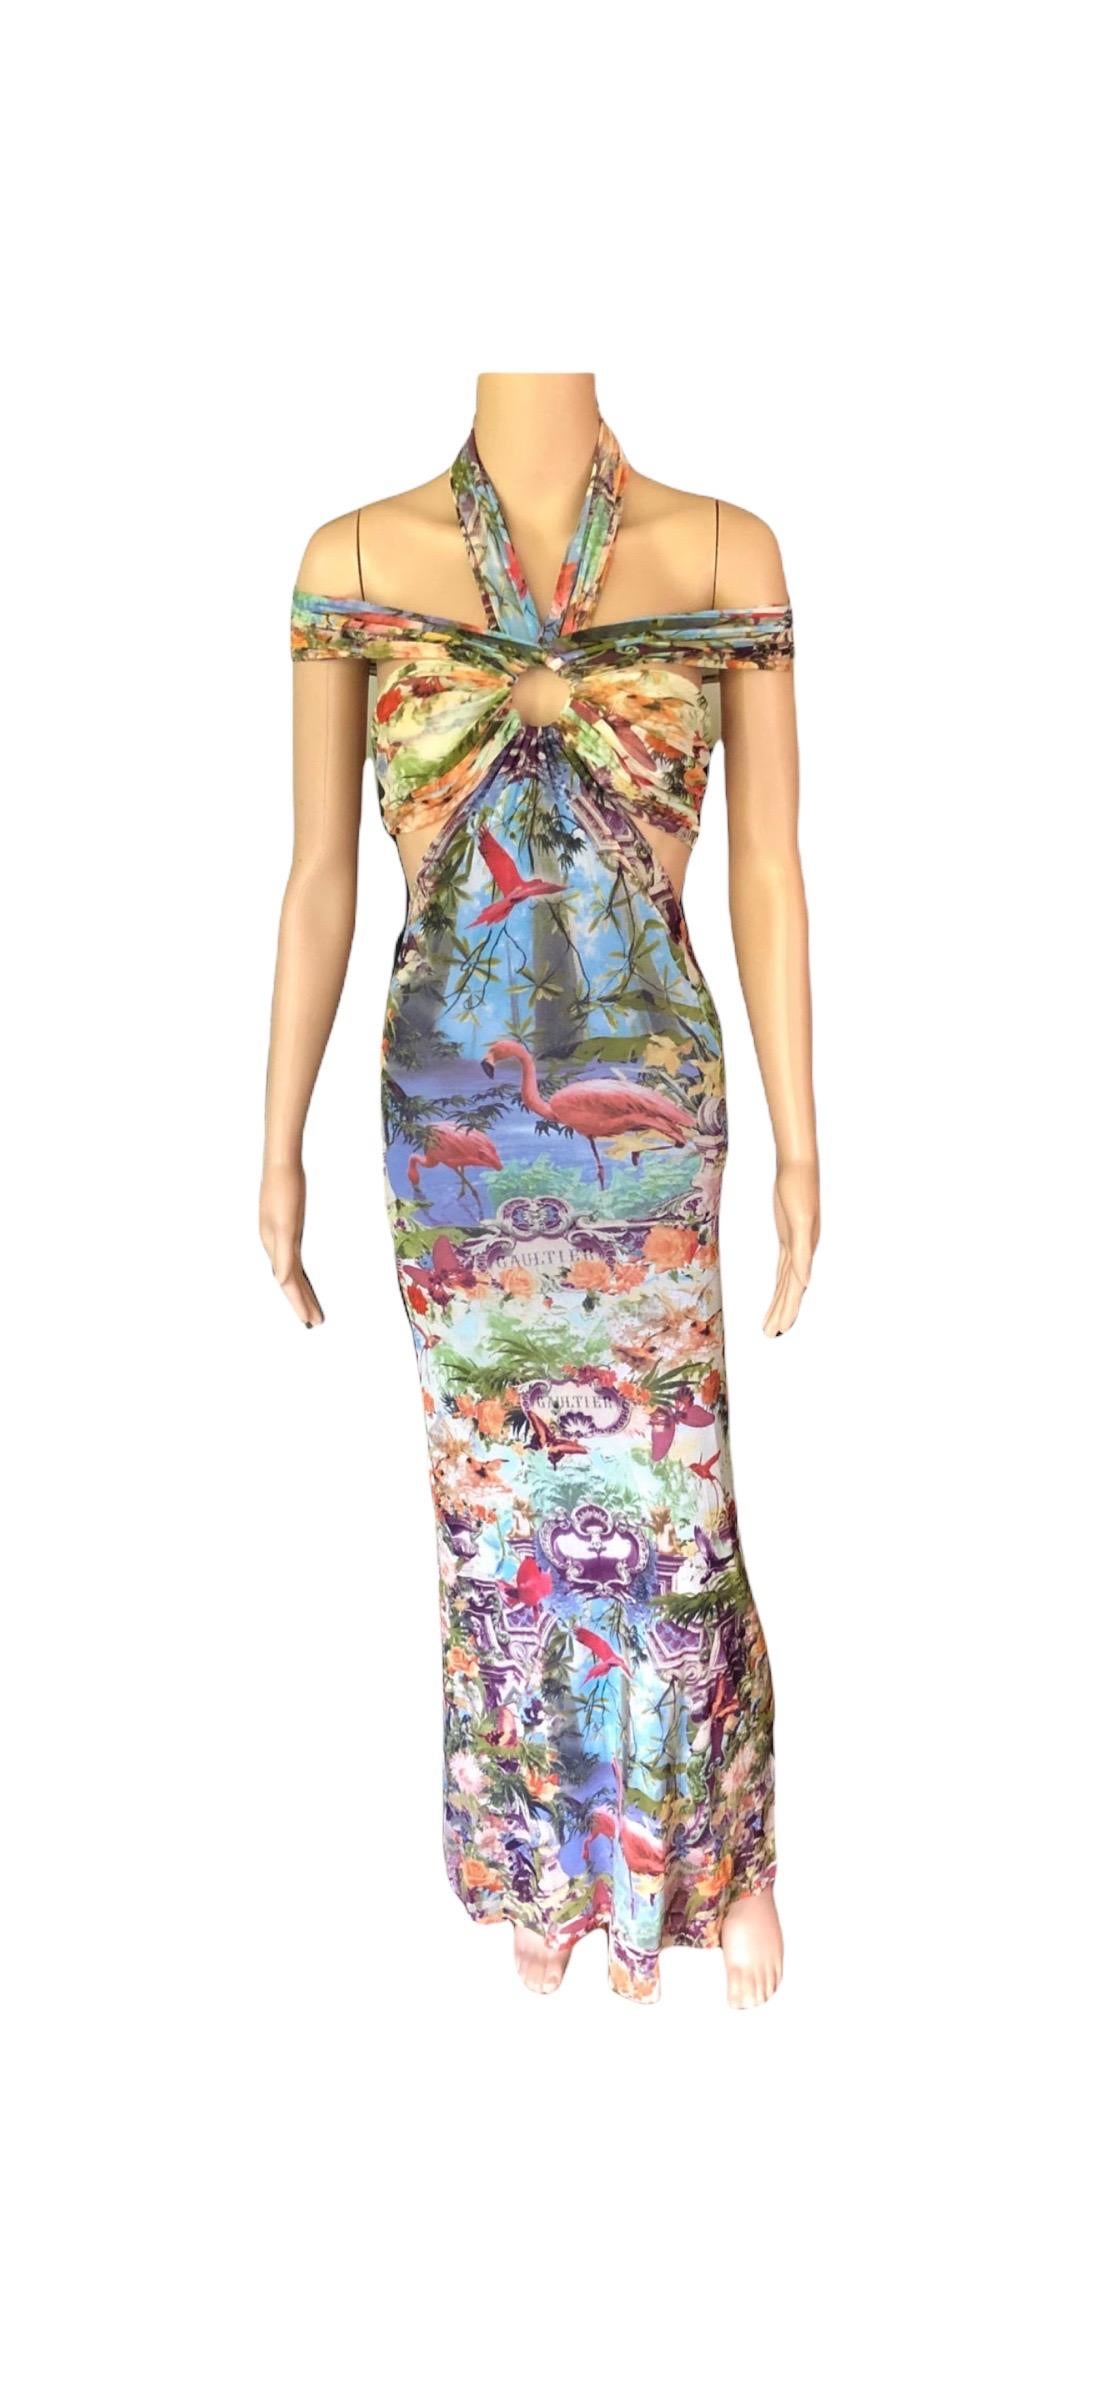 Jean Paul Gaultier Soleil S/S1999 Flamingo Tropical Print Cutout Mesh Maxi Dress For Sale 9